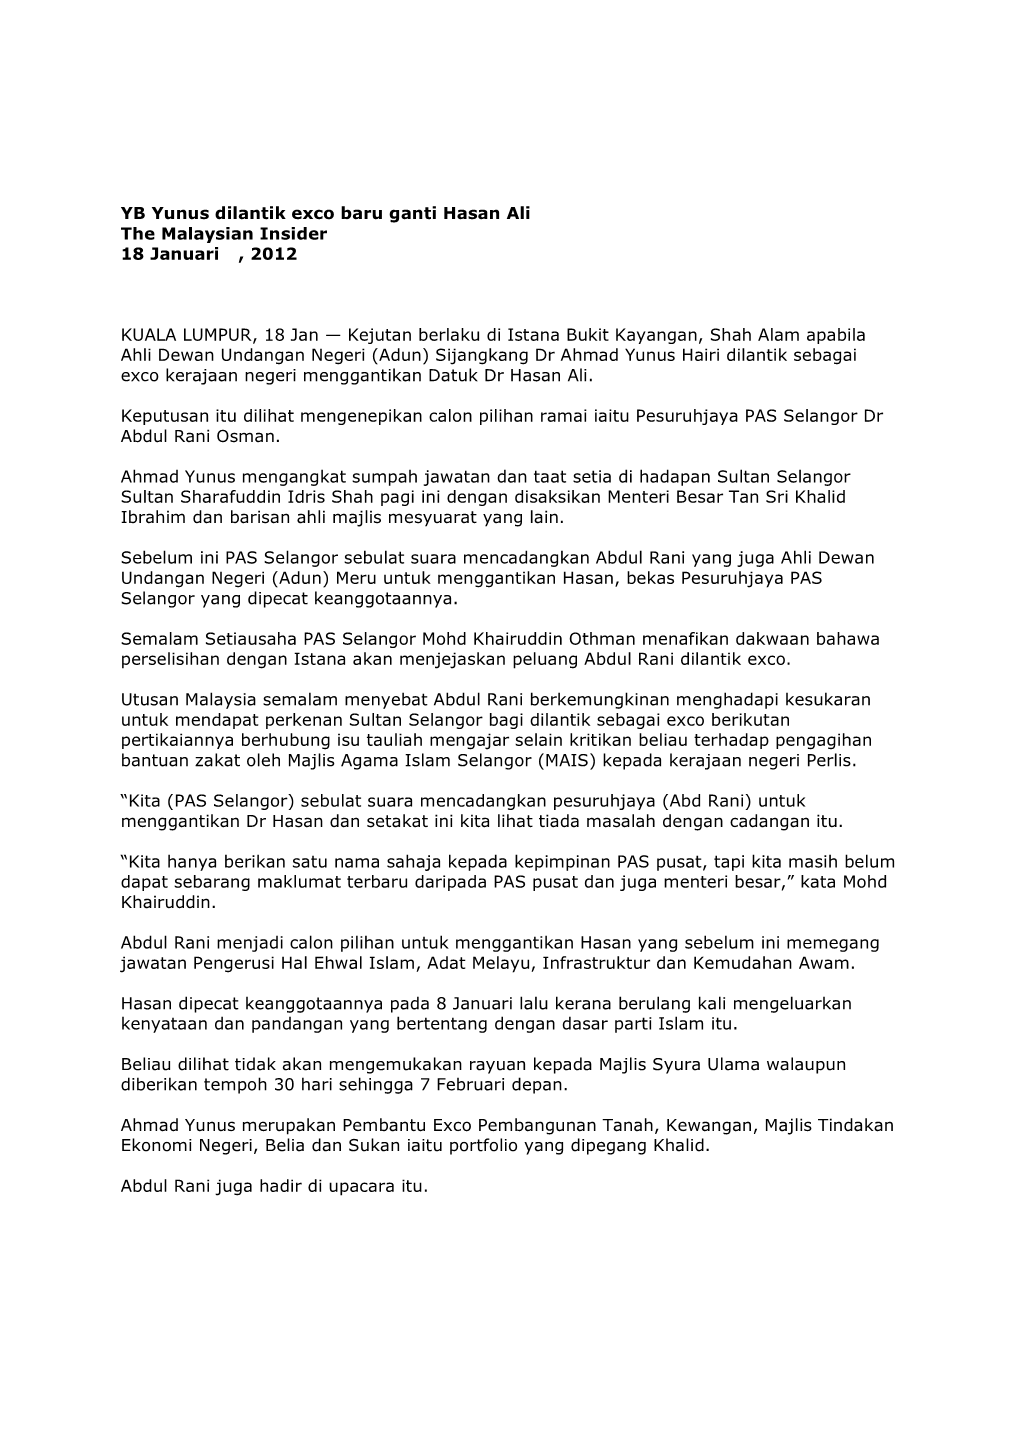 YB Yunus Dilantik Exco Baru Ganti Hasan Ali the Malaysian Insider 18 Januari , 2012